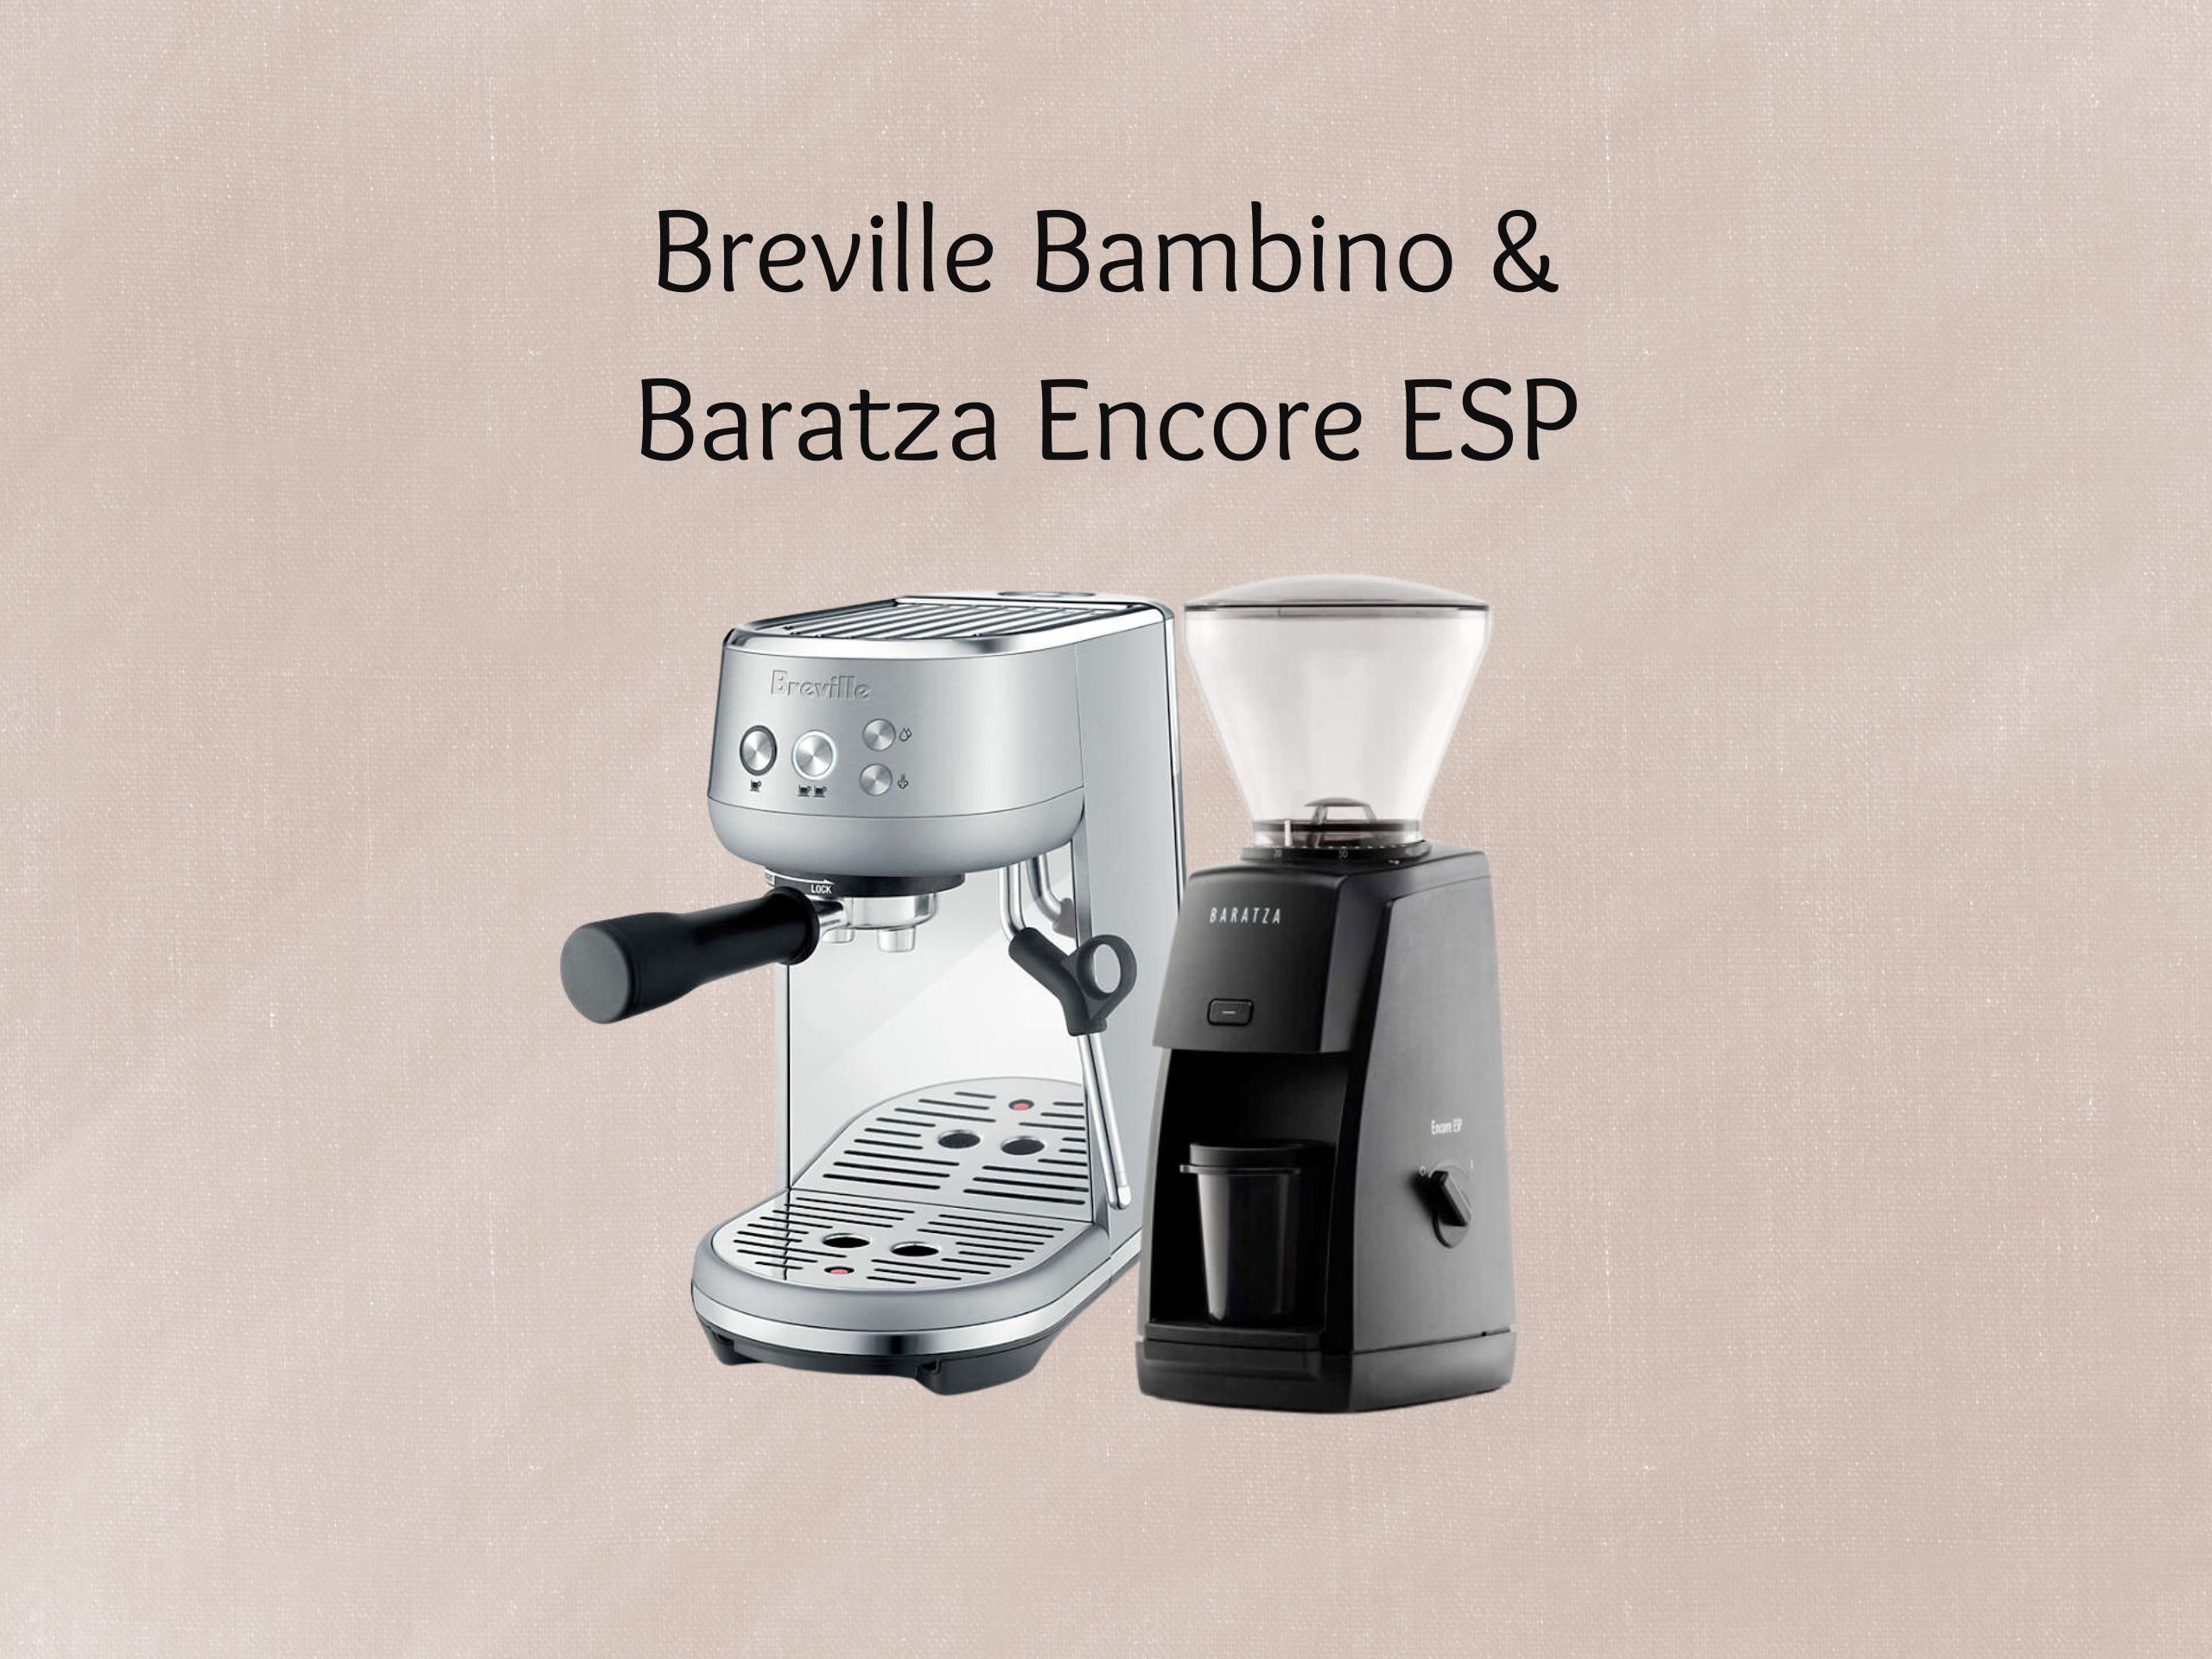 Breville Bambino & Baratza Encore ESP